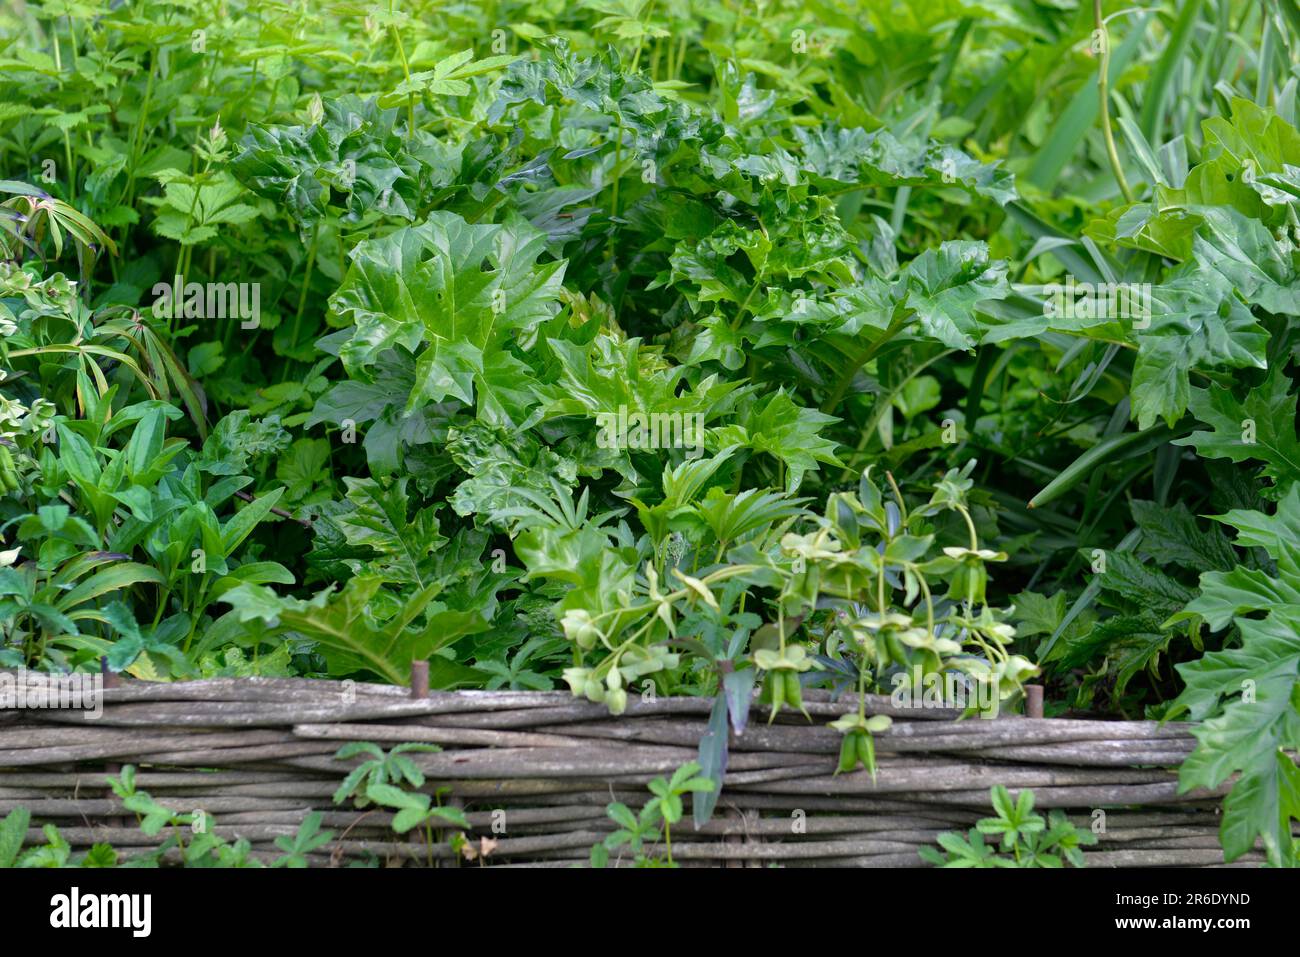 Mischung aus grünen Pflanzen mit großen Blättern hinter einem kleinen Weidenzaun Stockfoto